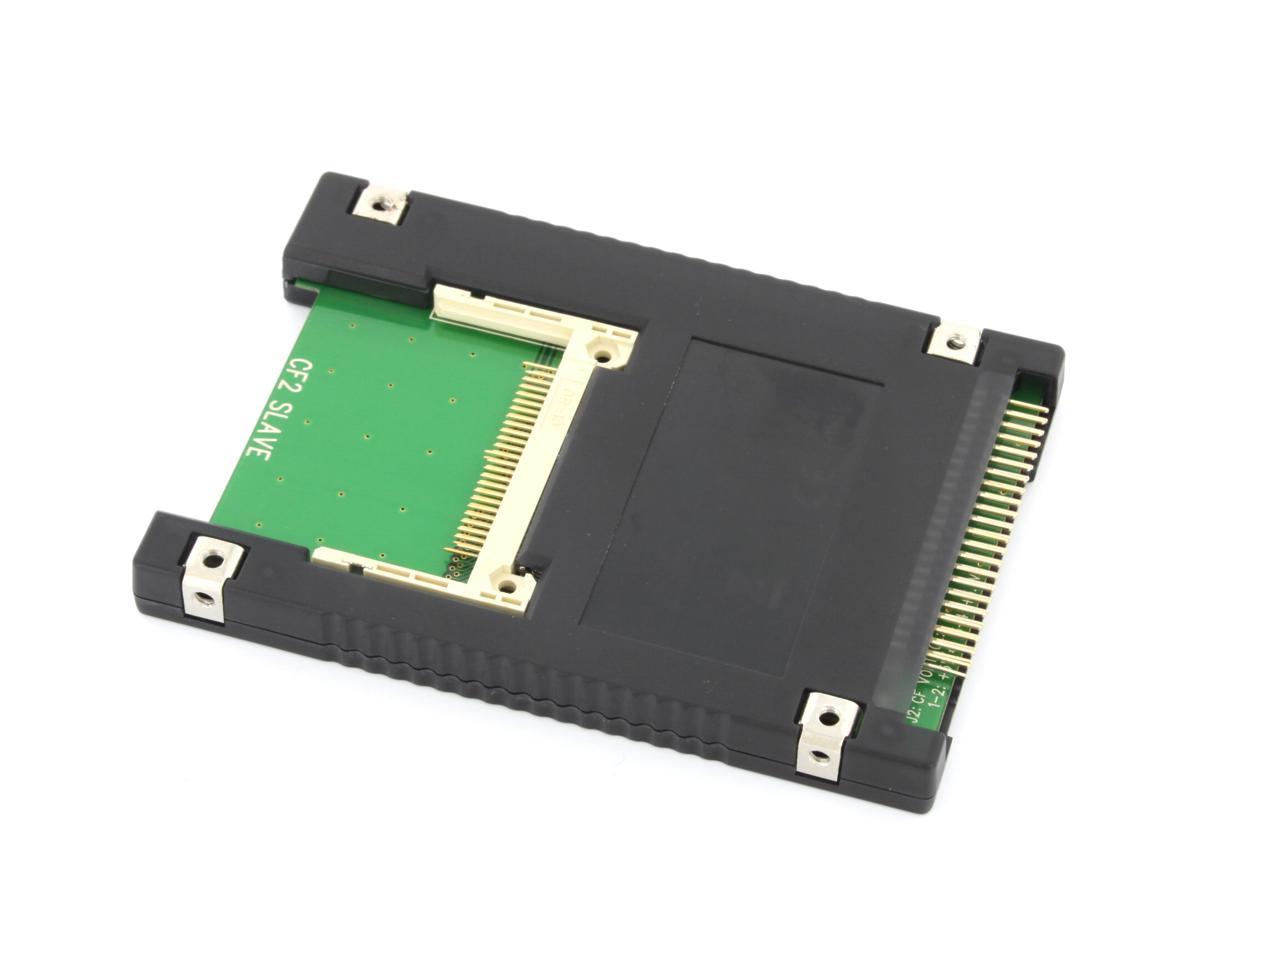 Syba Dual Compact Flash CF to 44 Pin IDE/PATA 2.5 Adapter Enclosure Black SD-ADA45006 